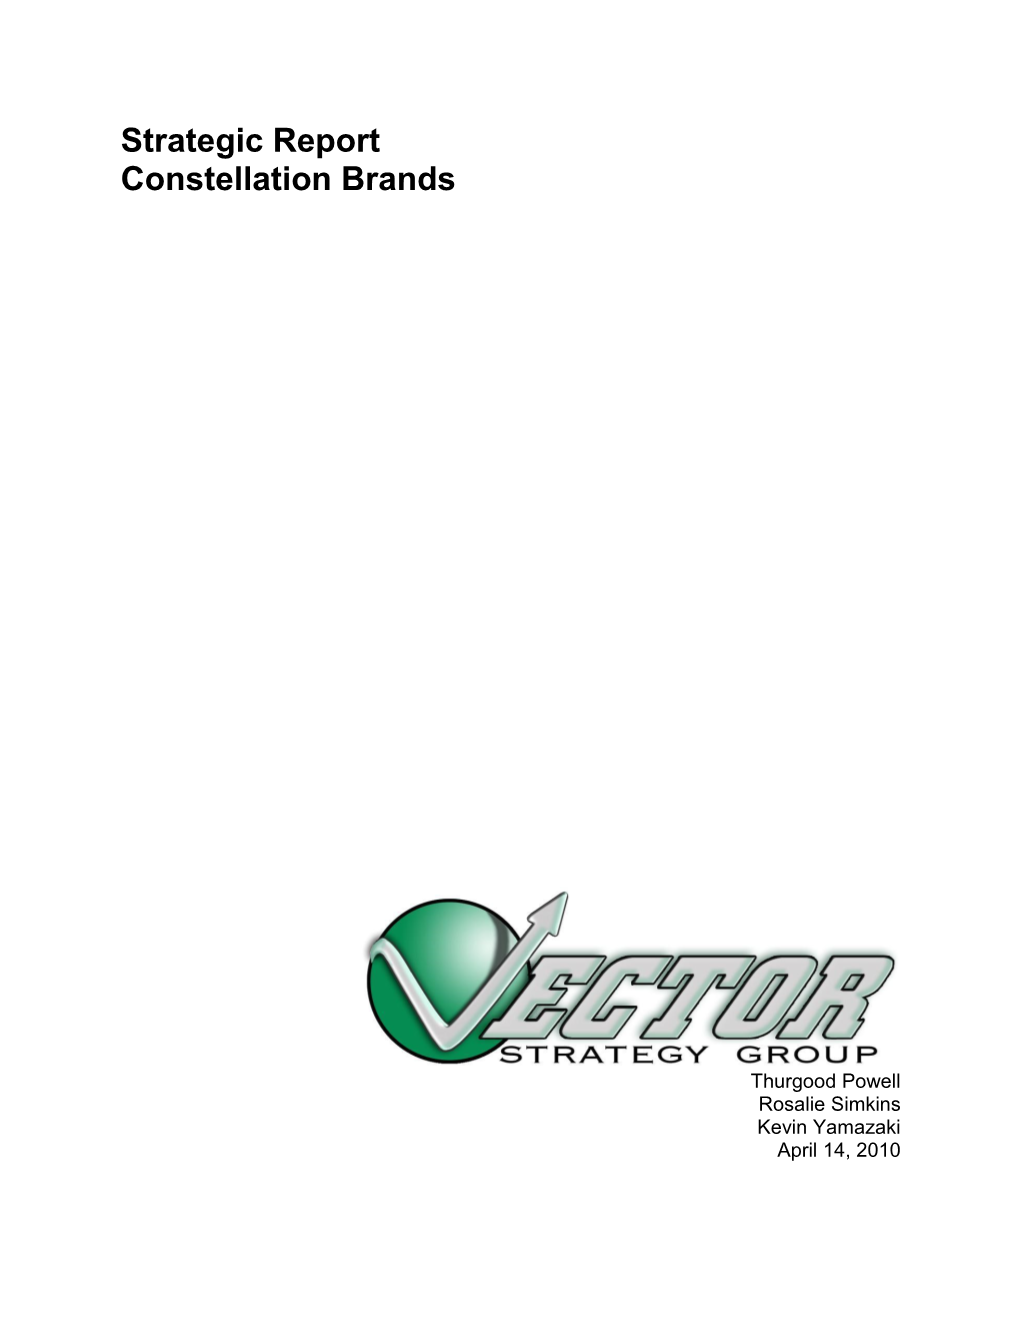 Constellation Brands (STZ)